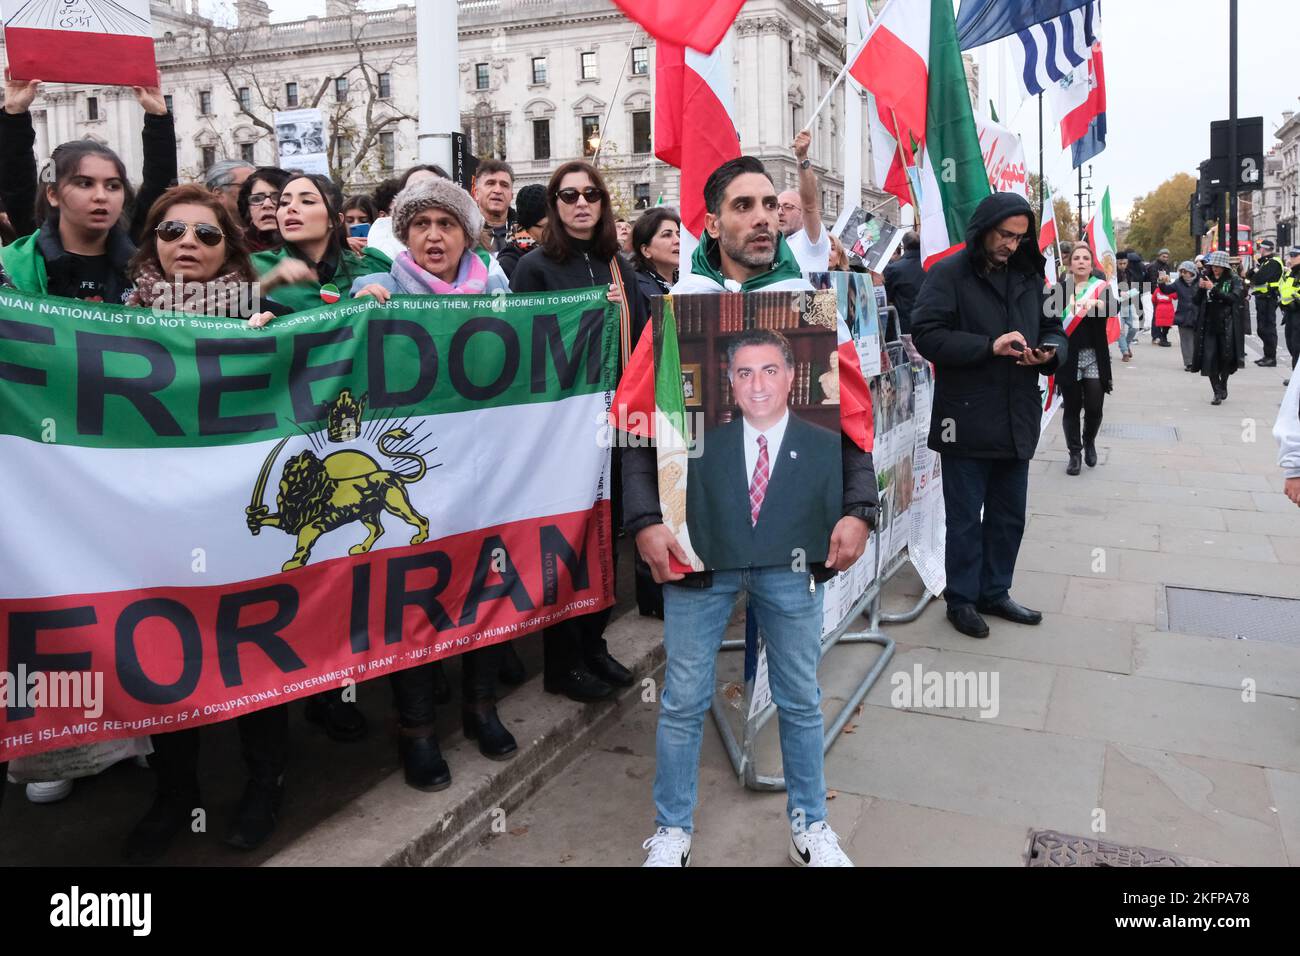 Parliament Square, Londres, Royaume-Uni. 19th novembre 2022. Manifestation contre la République islamique en Iran sur la place du Parlement. Crédit : Matthew Chattle/Alay Live News Banque D'Images